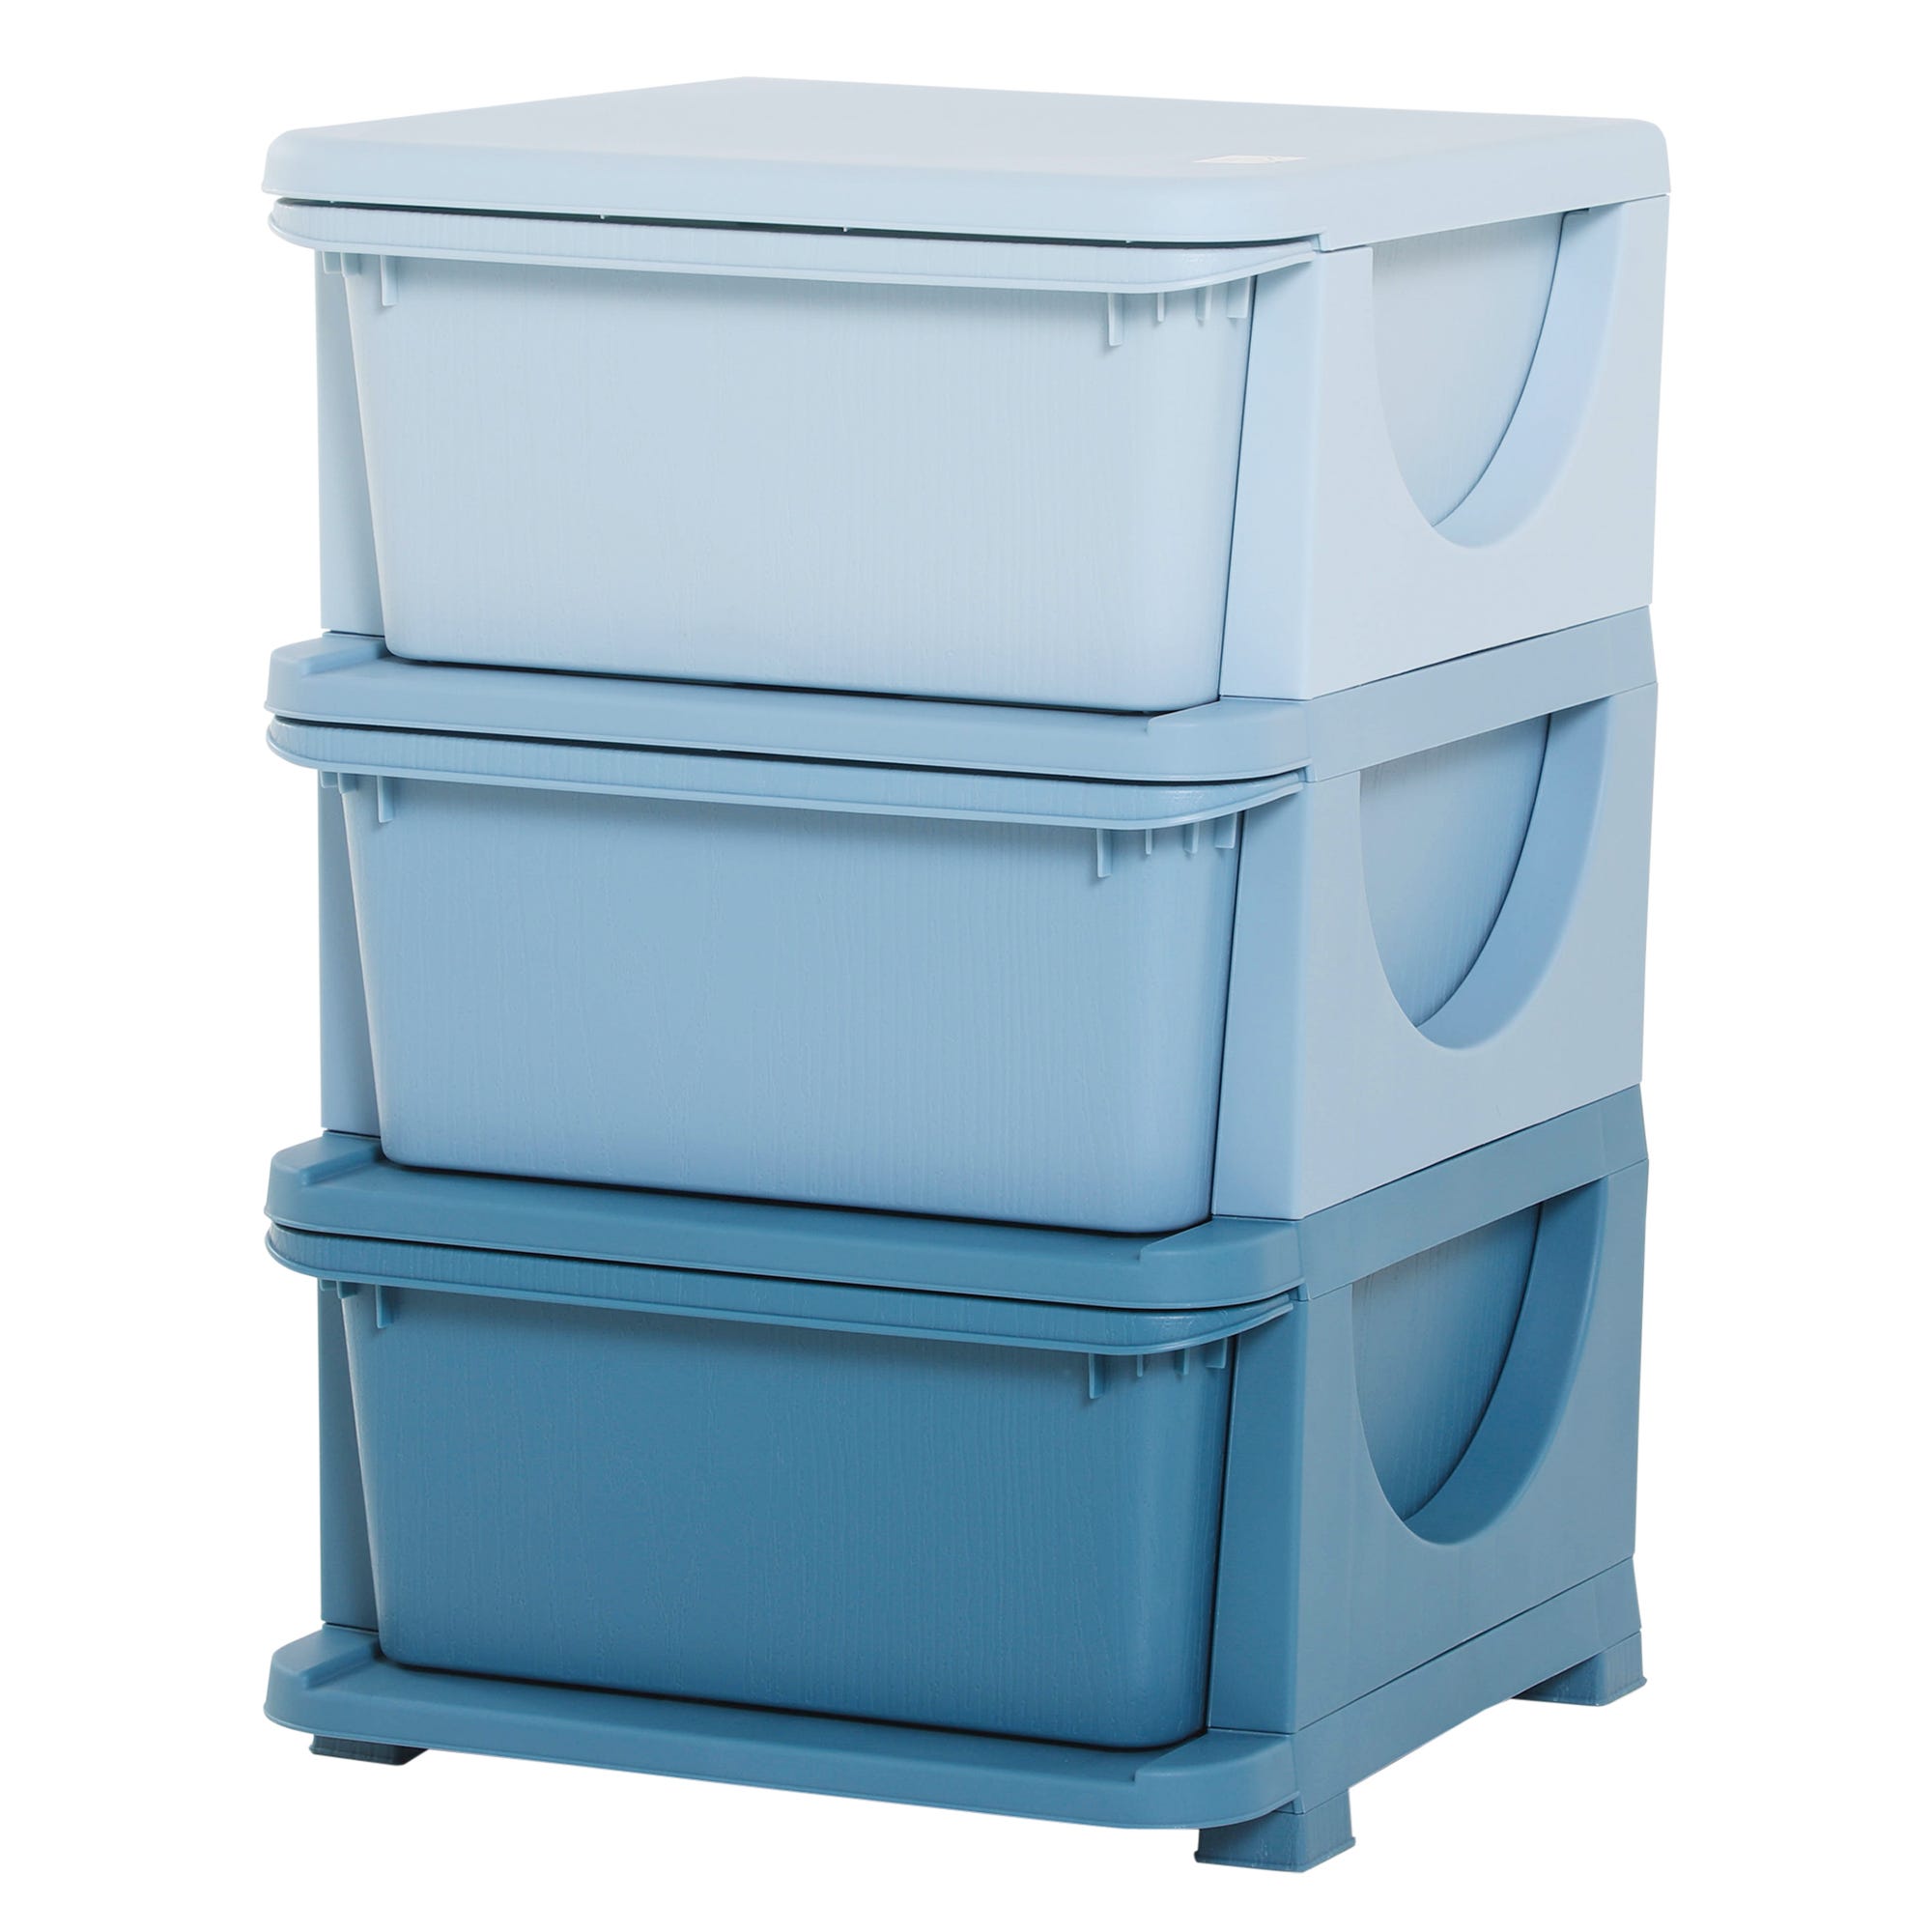 Caja de almacenaje - blanco/azul - Kiabi - 9.00€